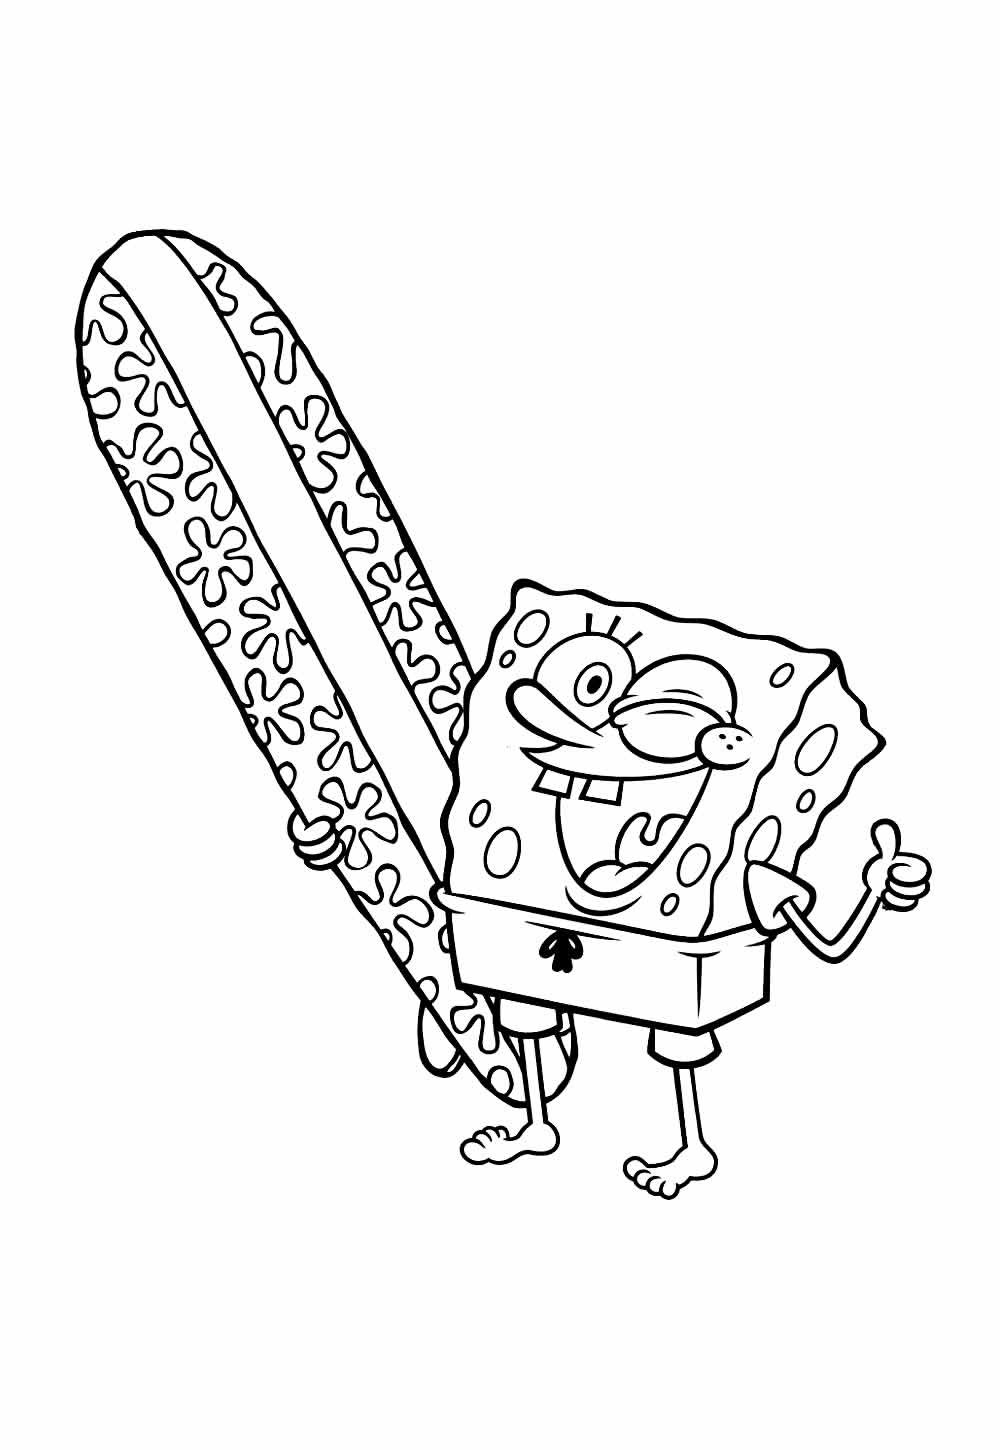 Desenho do Bob Esponja com Prancha de Surf